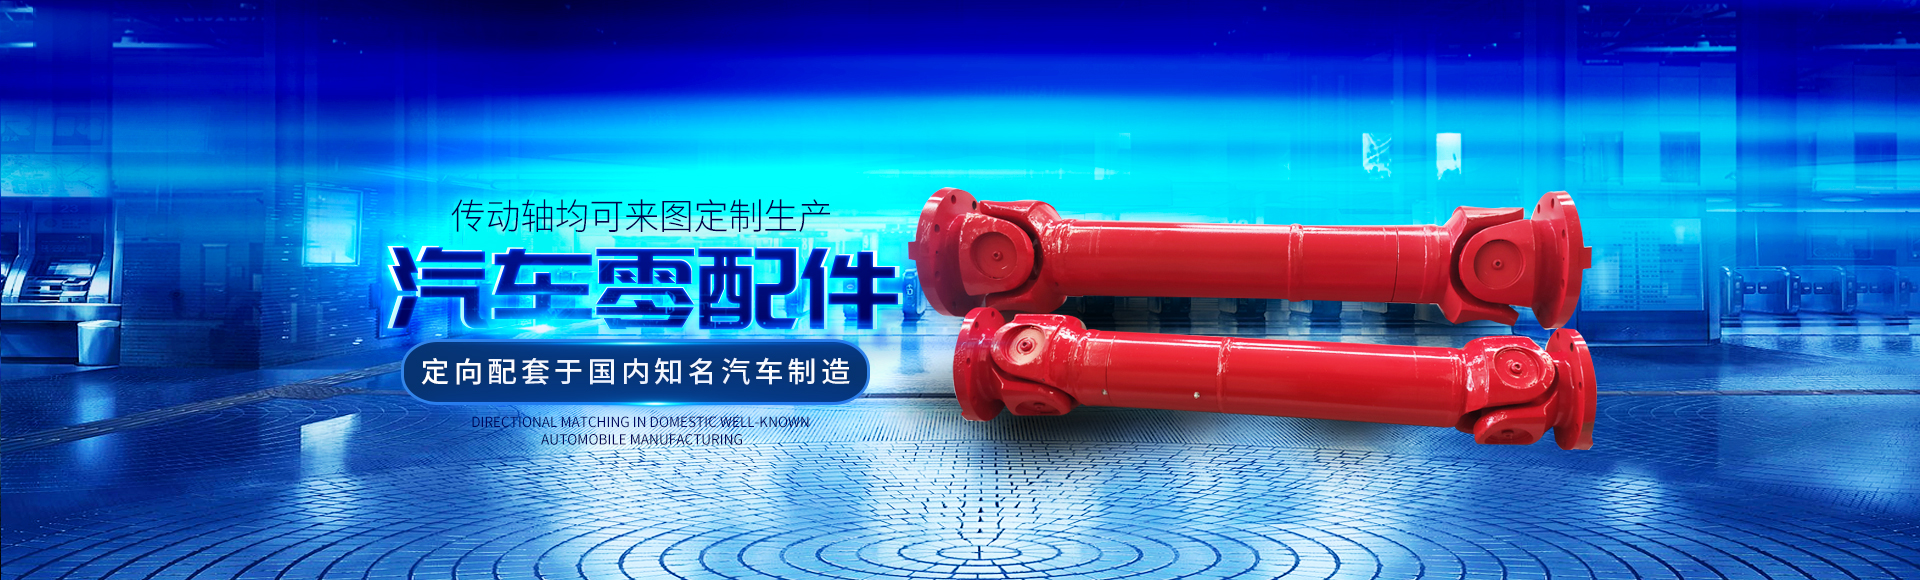 衡阳市祝海机械-新葡的京3512vip有限公司_湖南汽车零配件生产销售|湖南传动轴生产销售